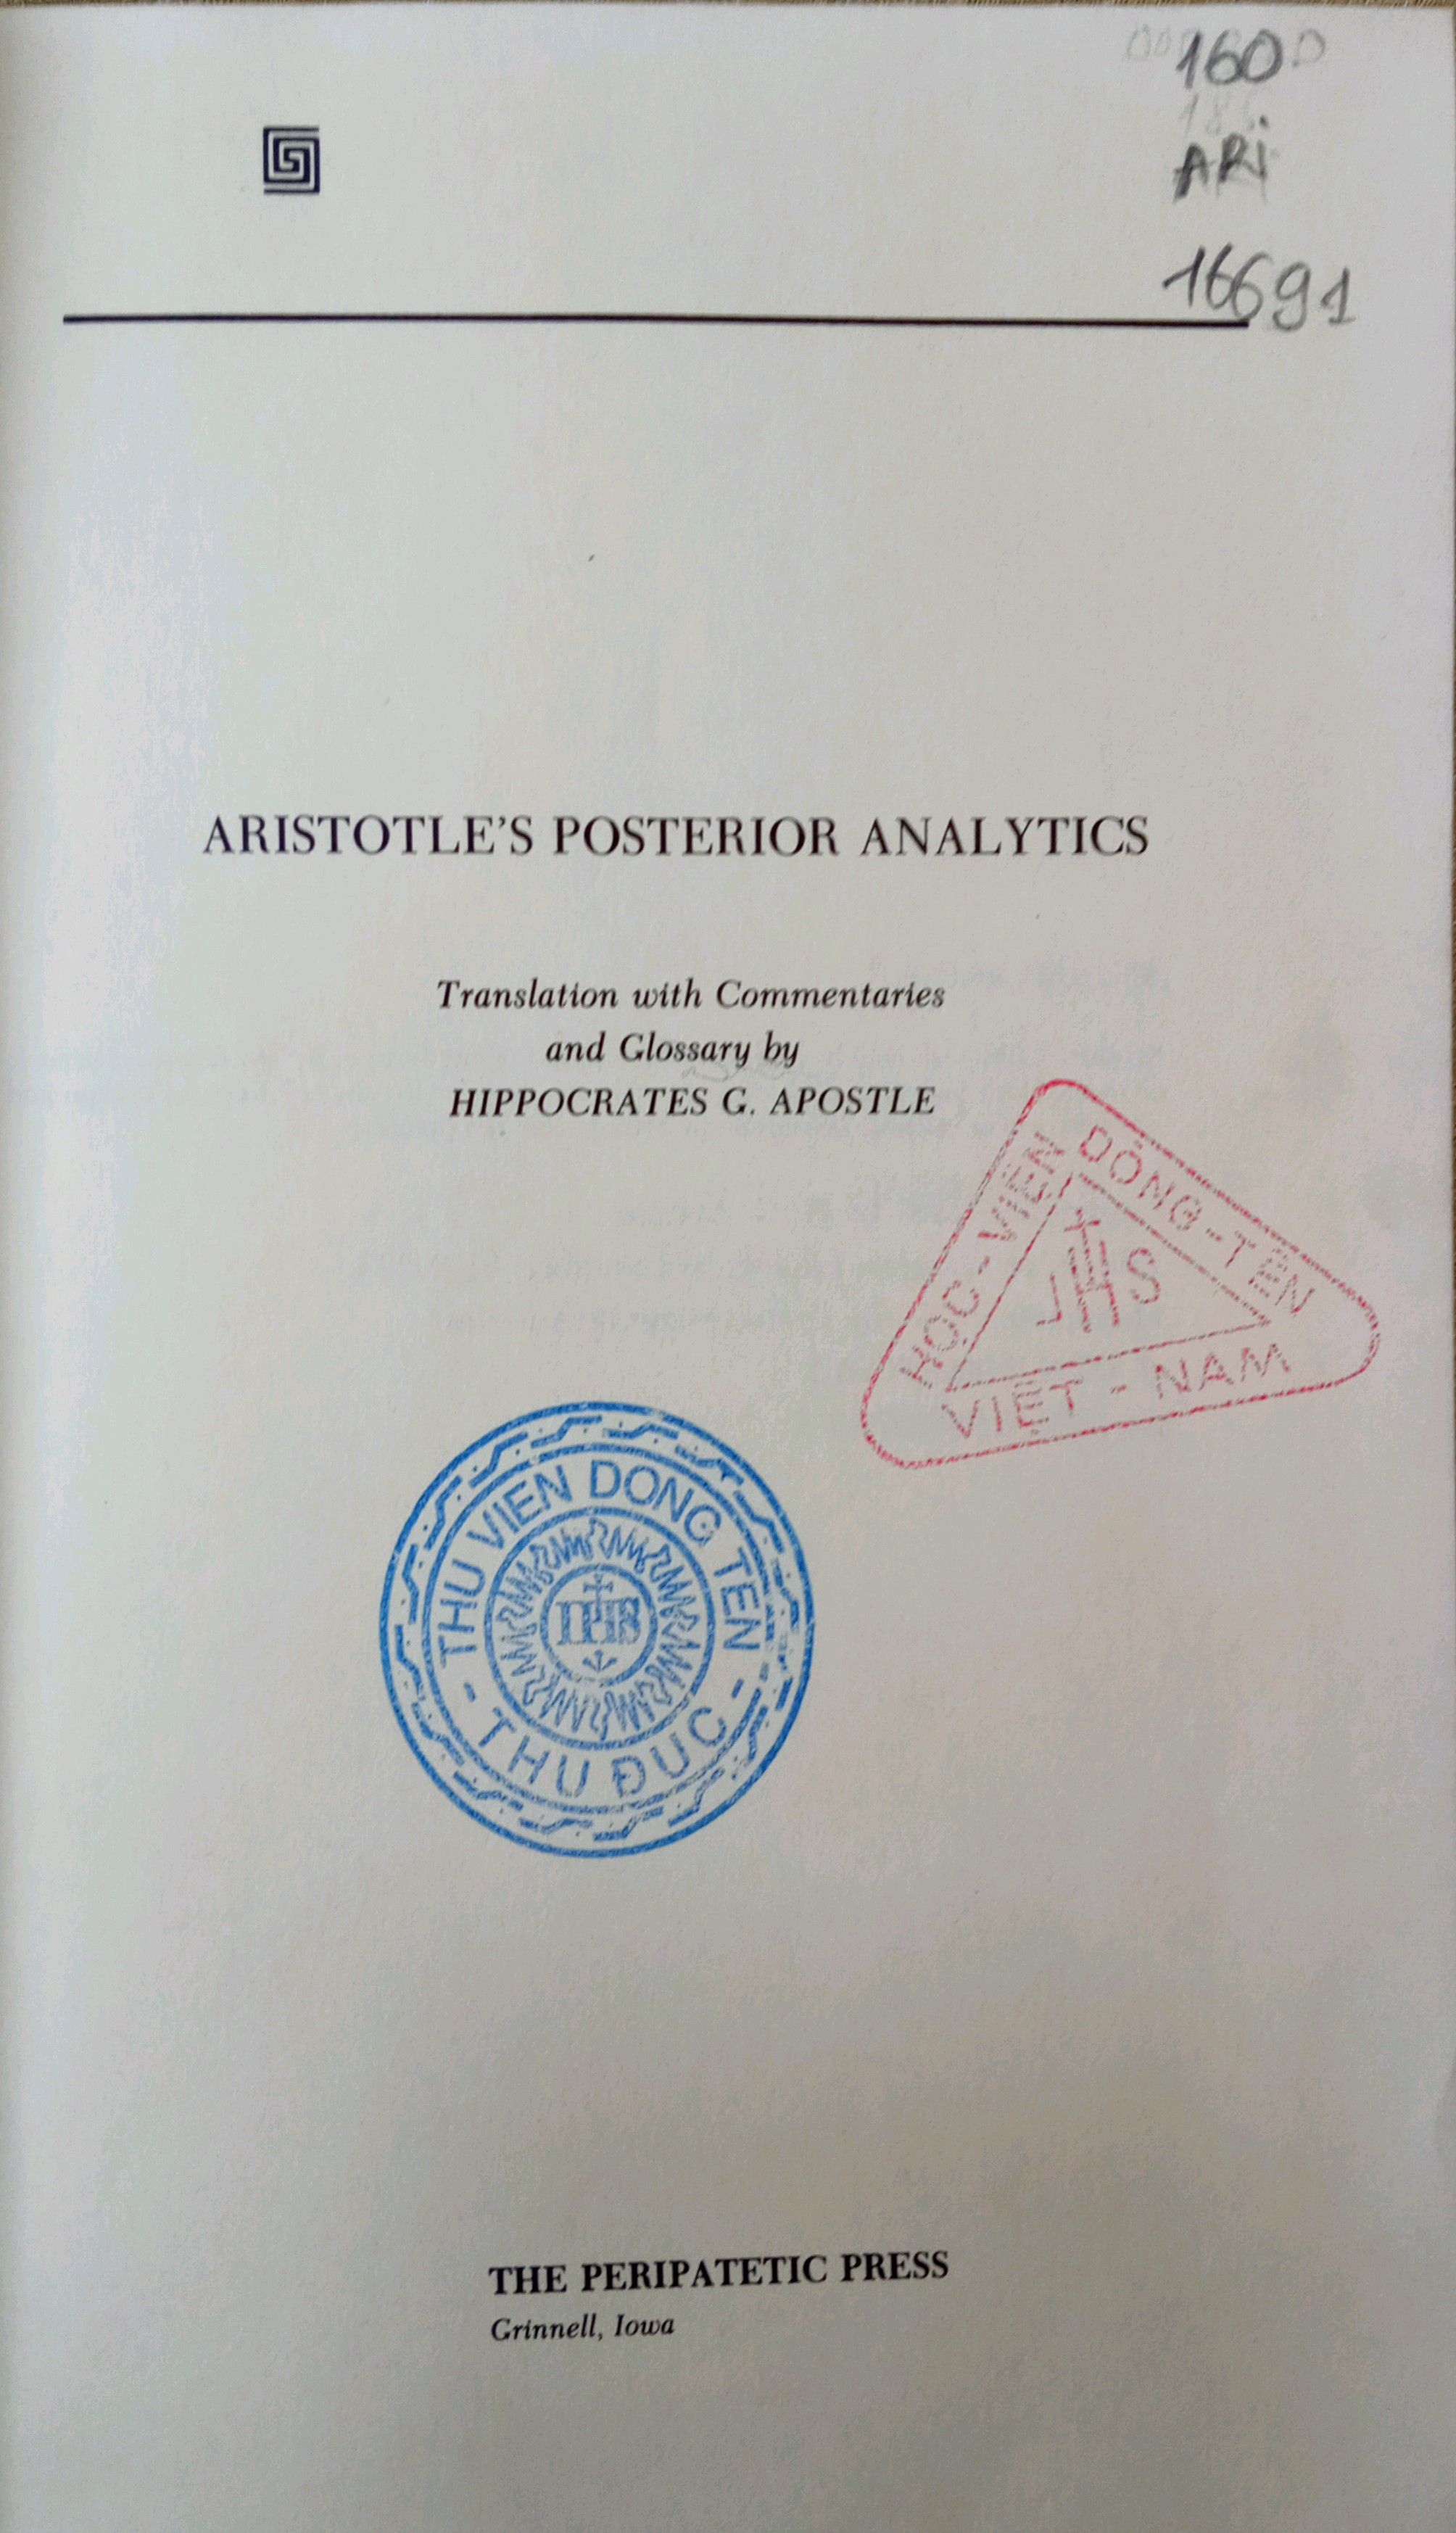 ARISTOTLE's POSTERIOR ANALYTICS